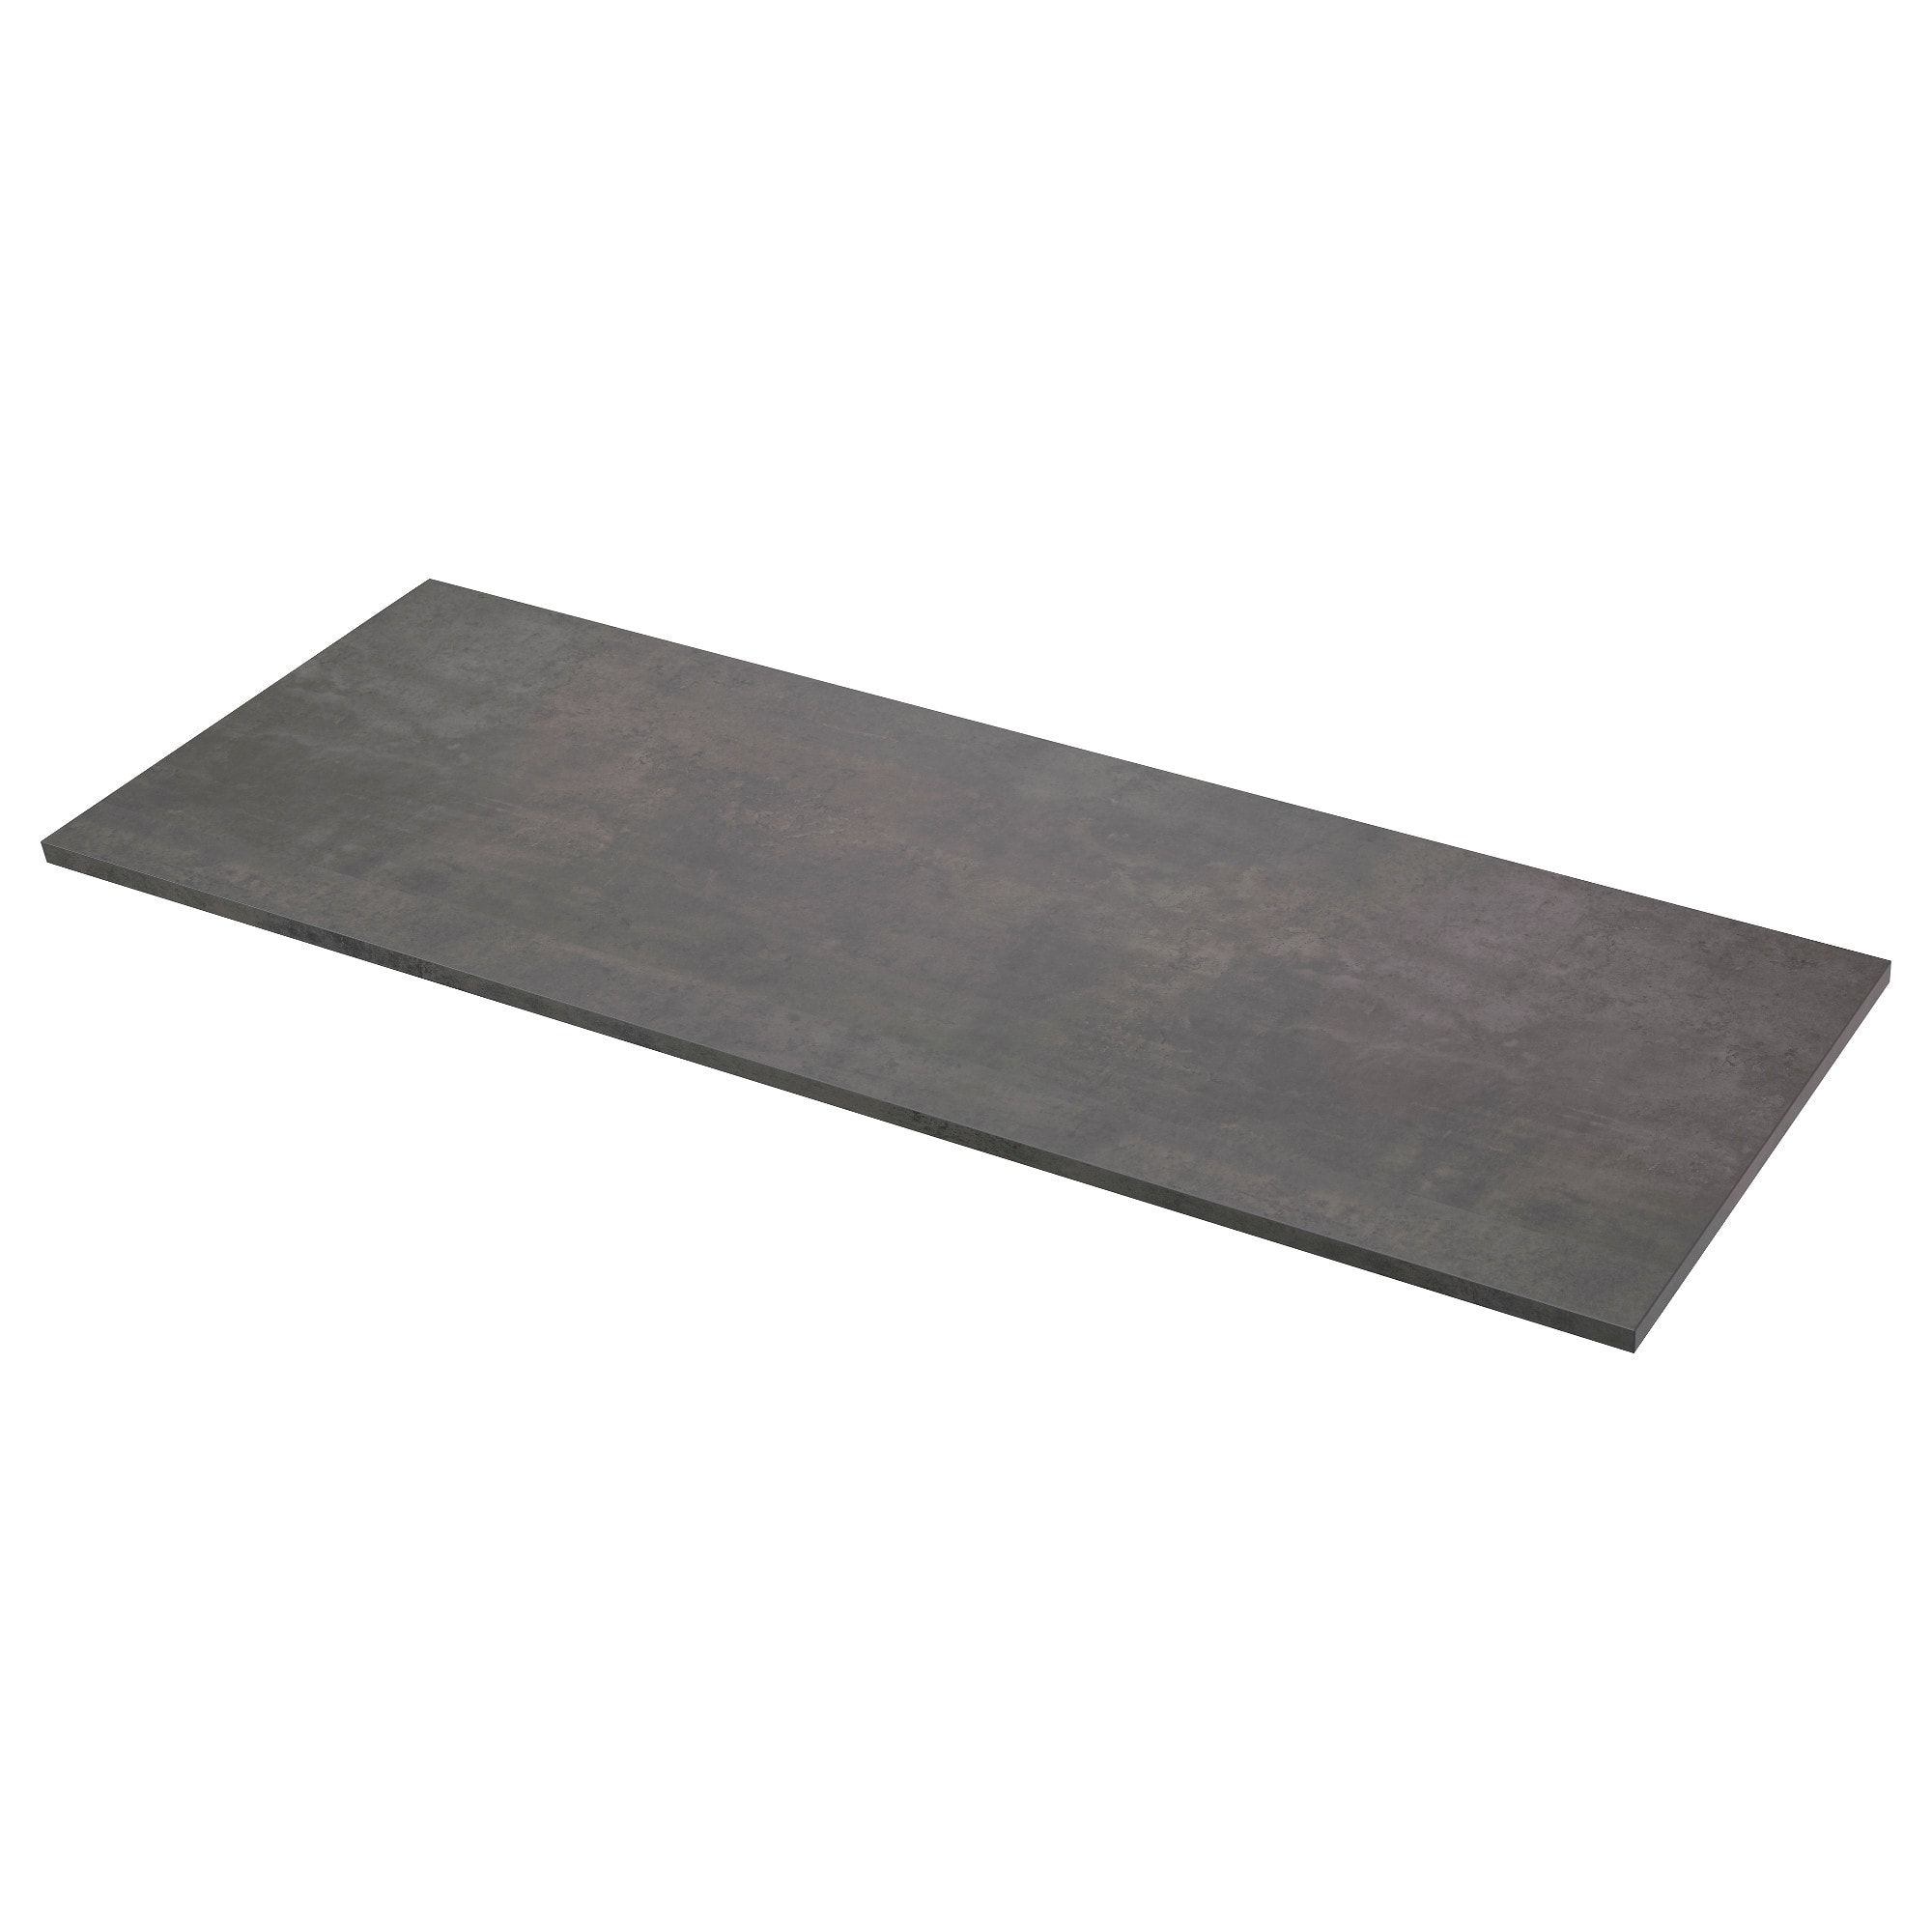 Concrete Countertops Pros Cons And, Ikea Concrete Countertop